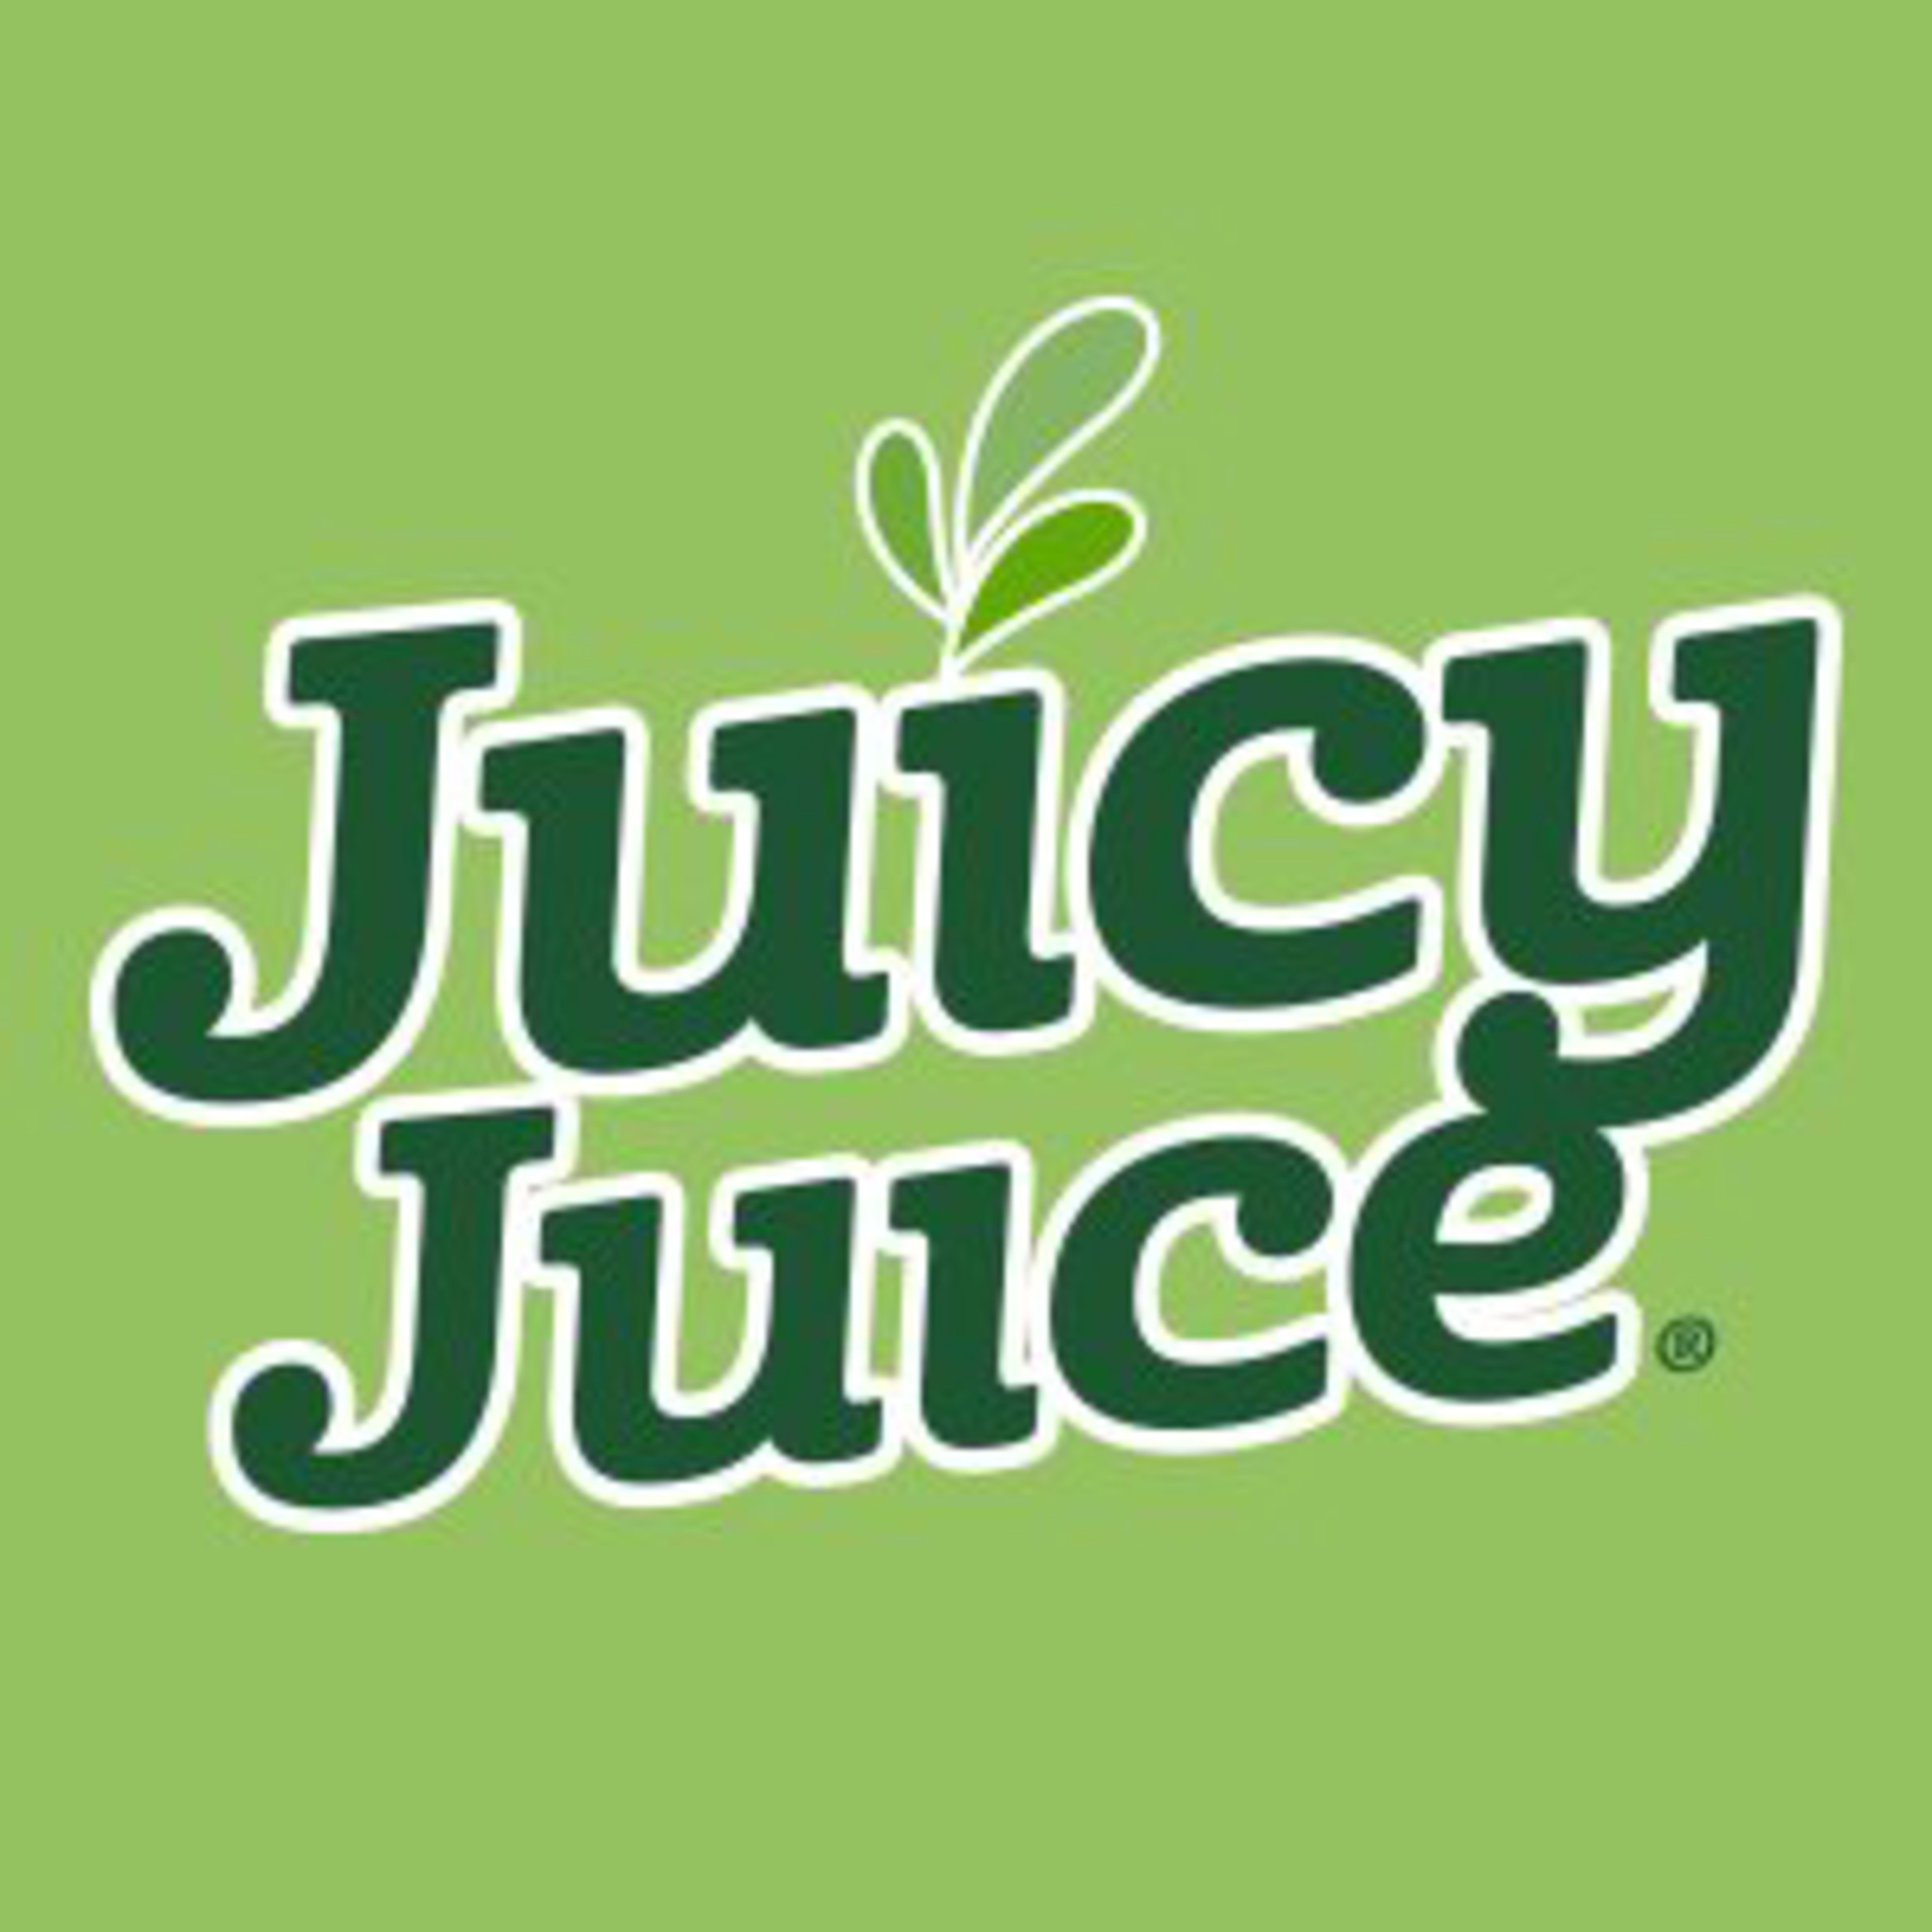 Juicy JuiceCode